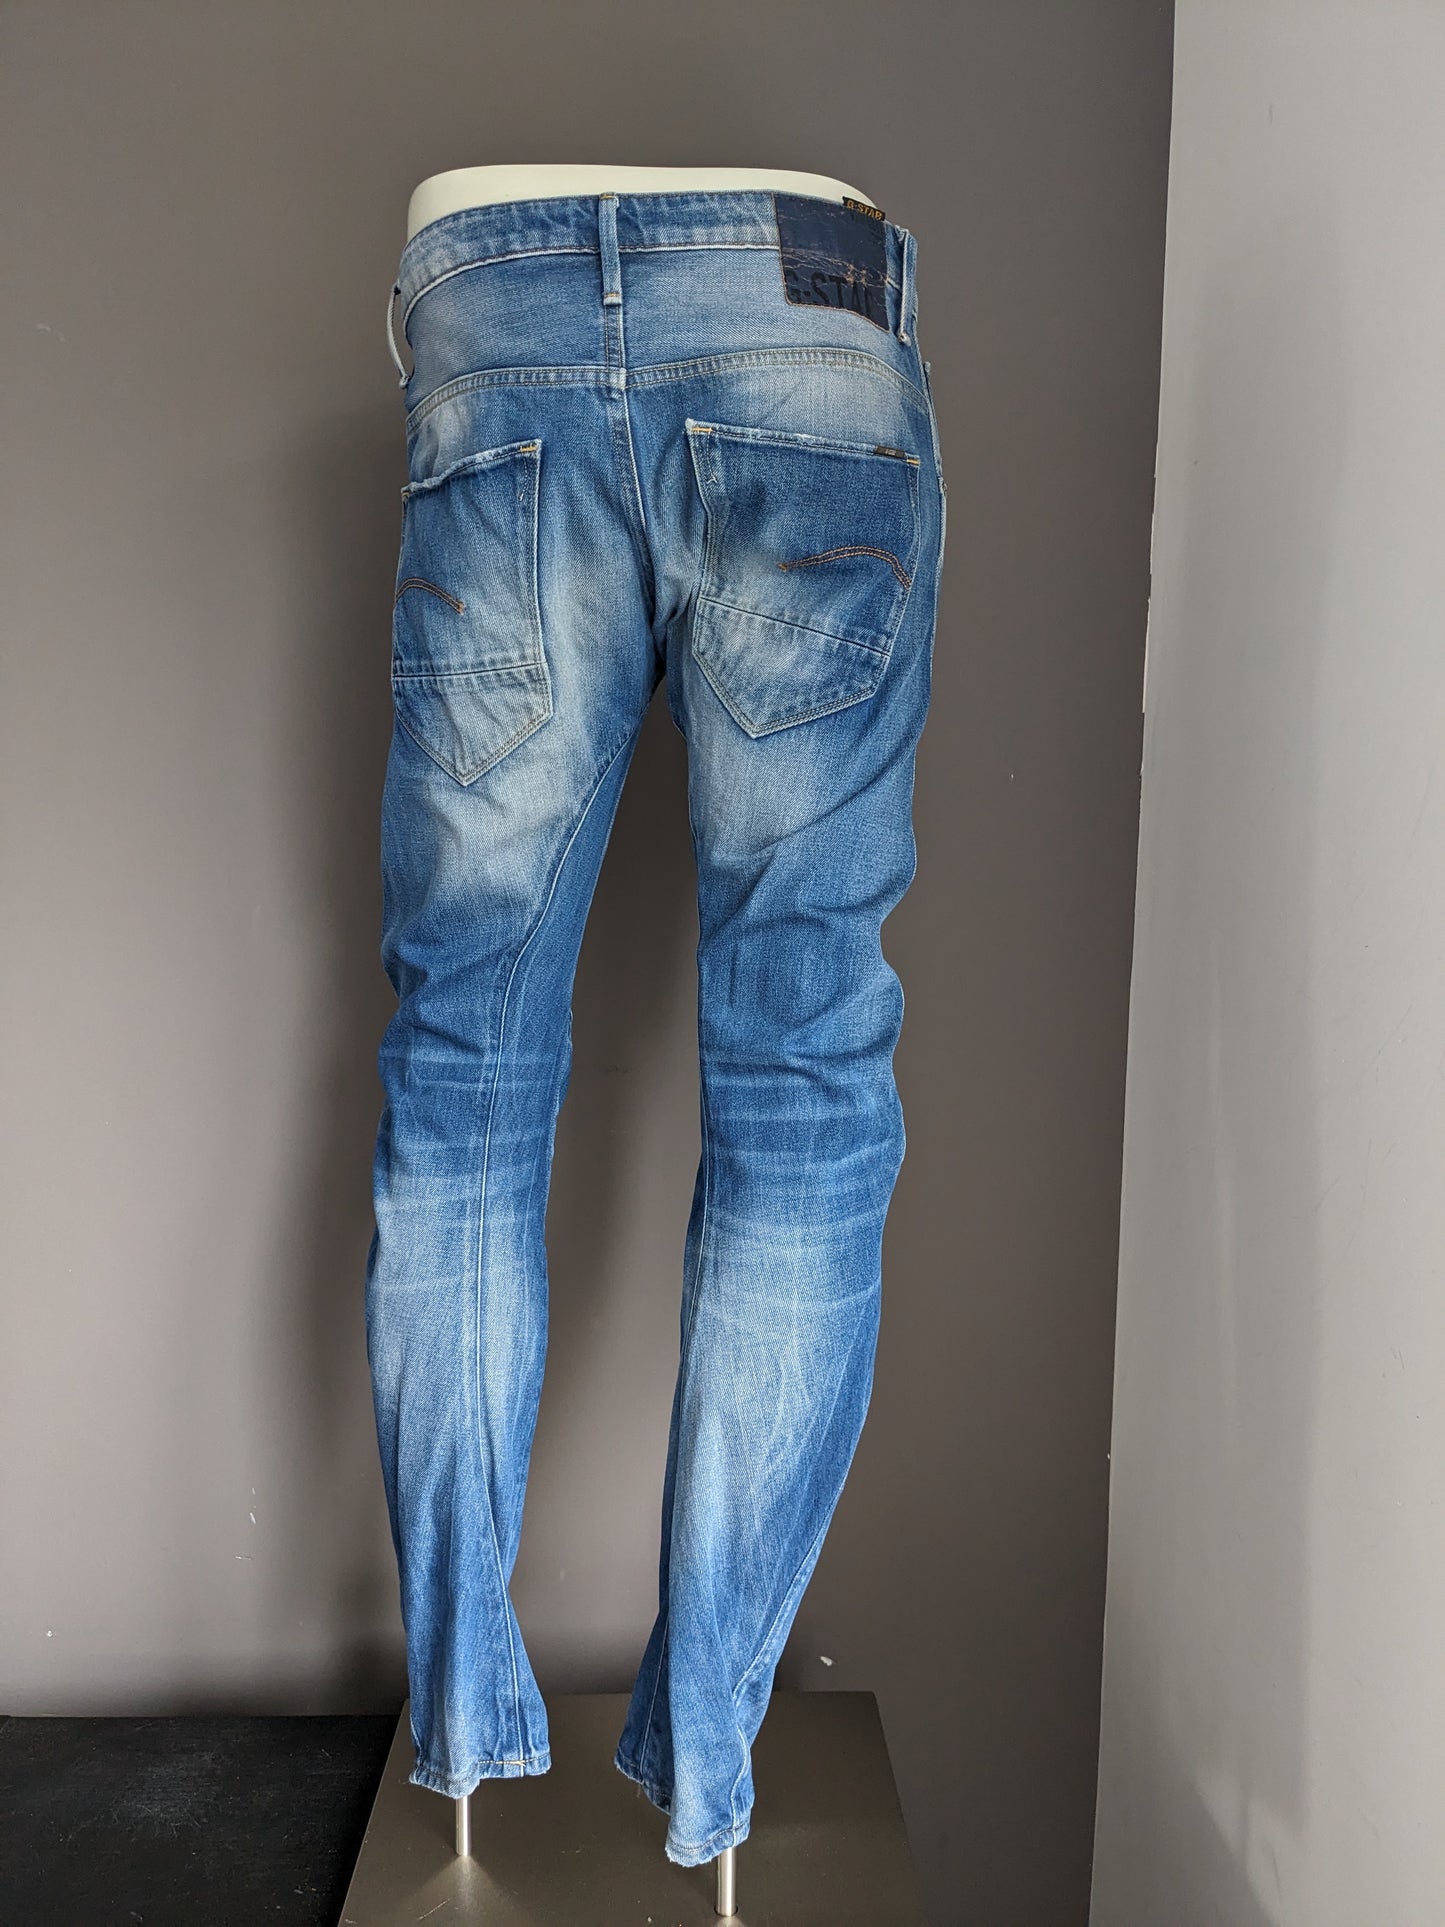 Jeans GSTAR RAW. Colorato azzurro. Taglia W33 - L32.